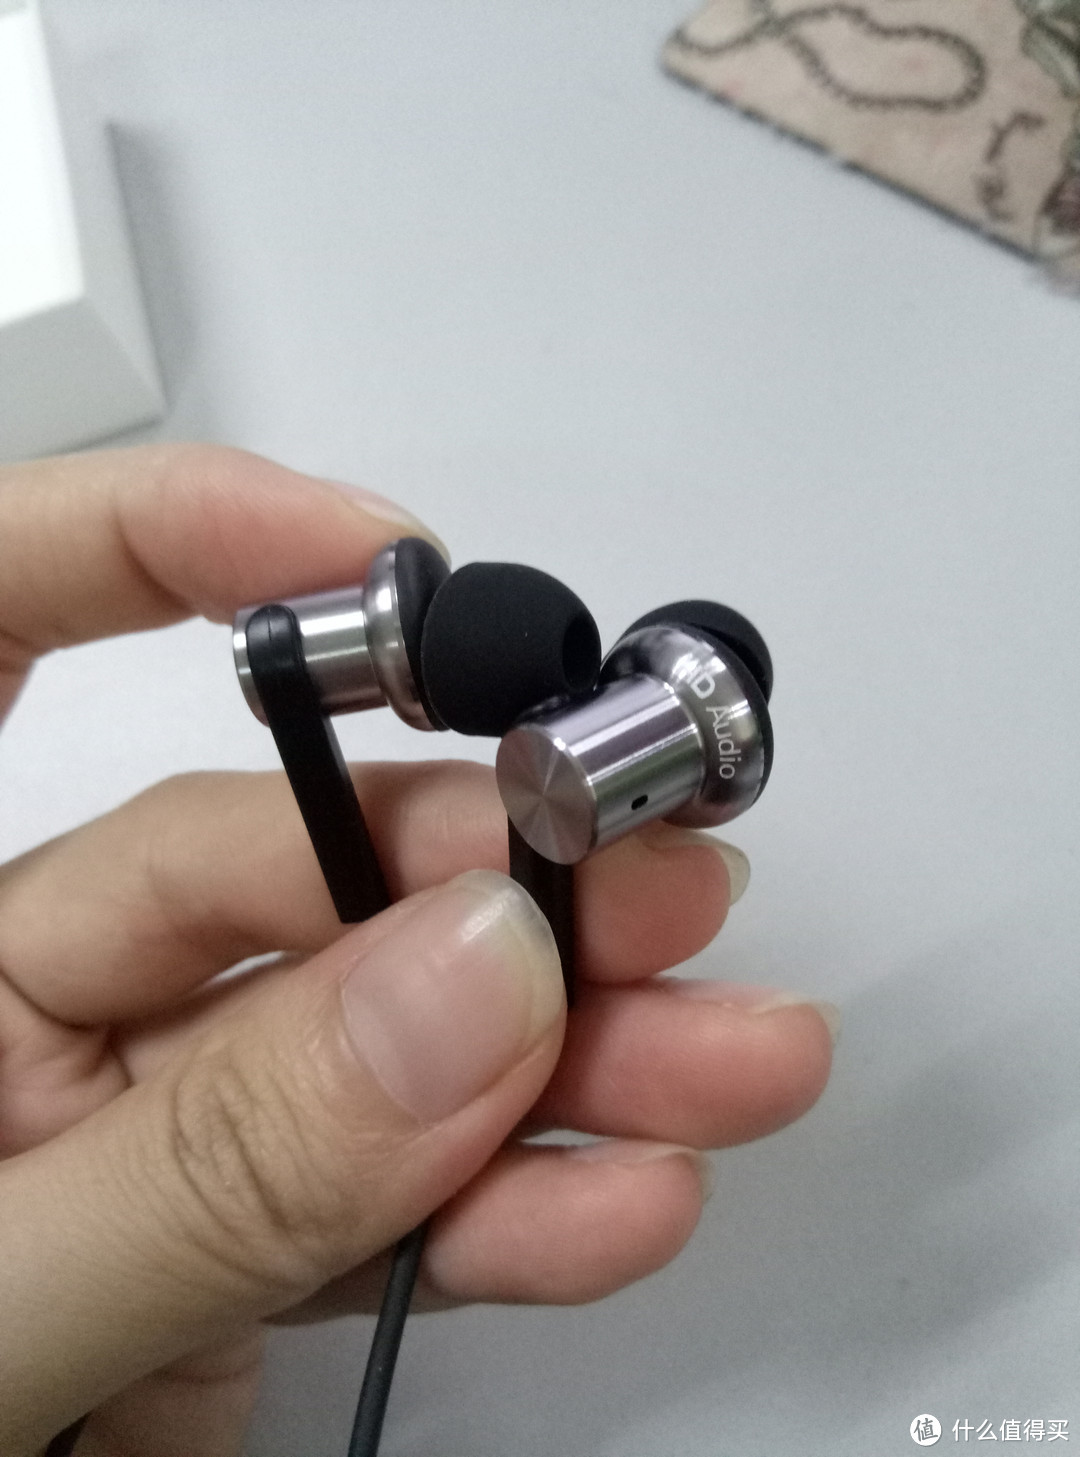 #原创新人# 99元的 MI 小米 圈铁 入耳式耳机 究竟值不值得买？